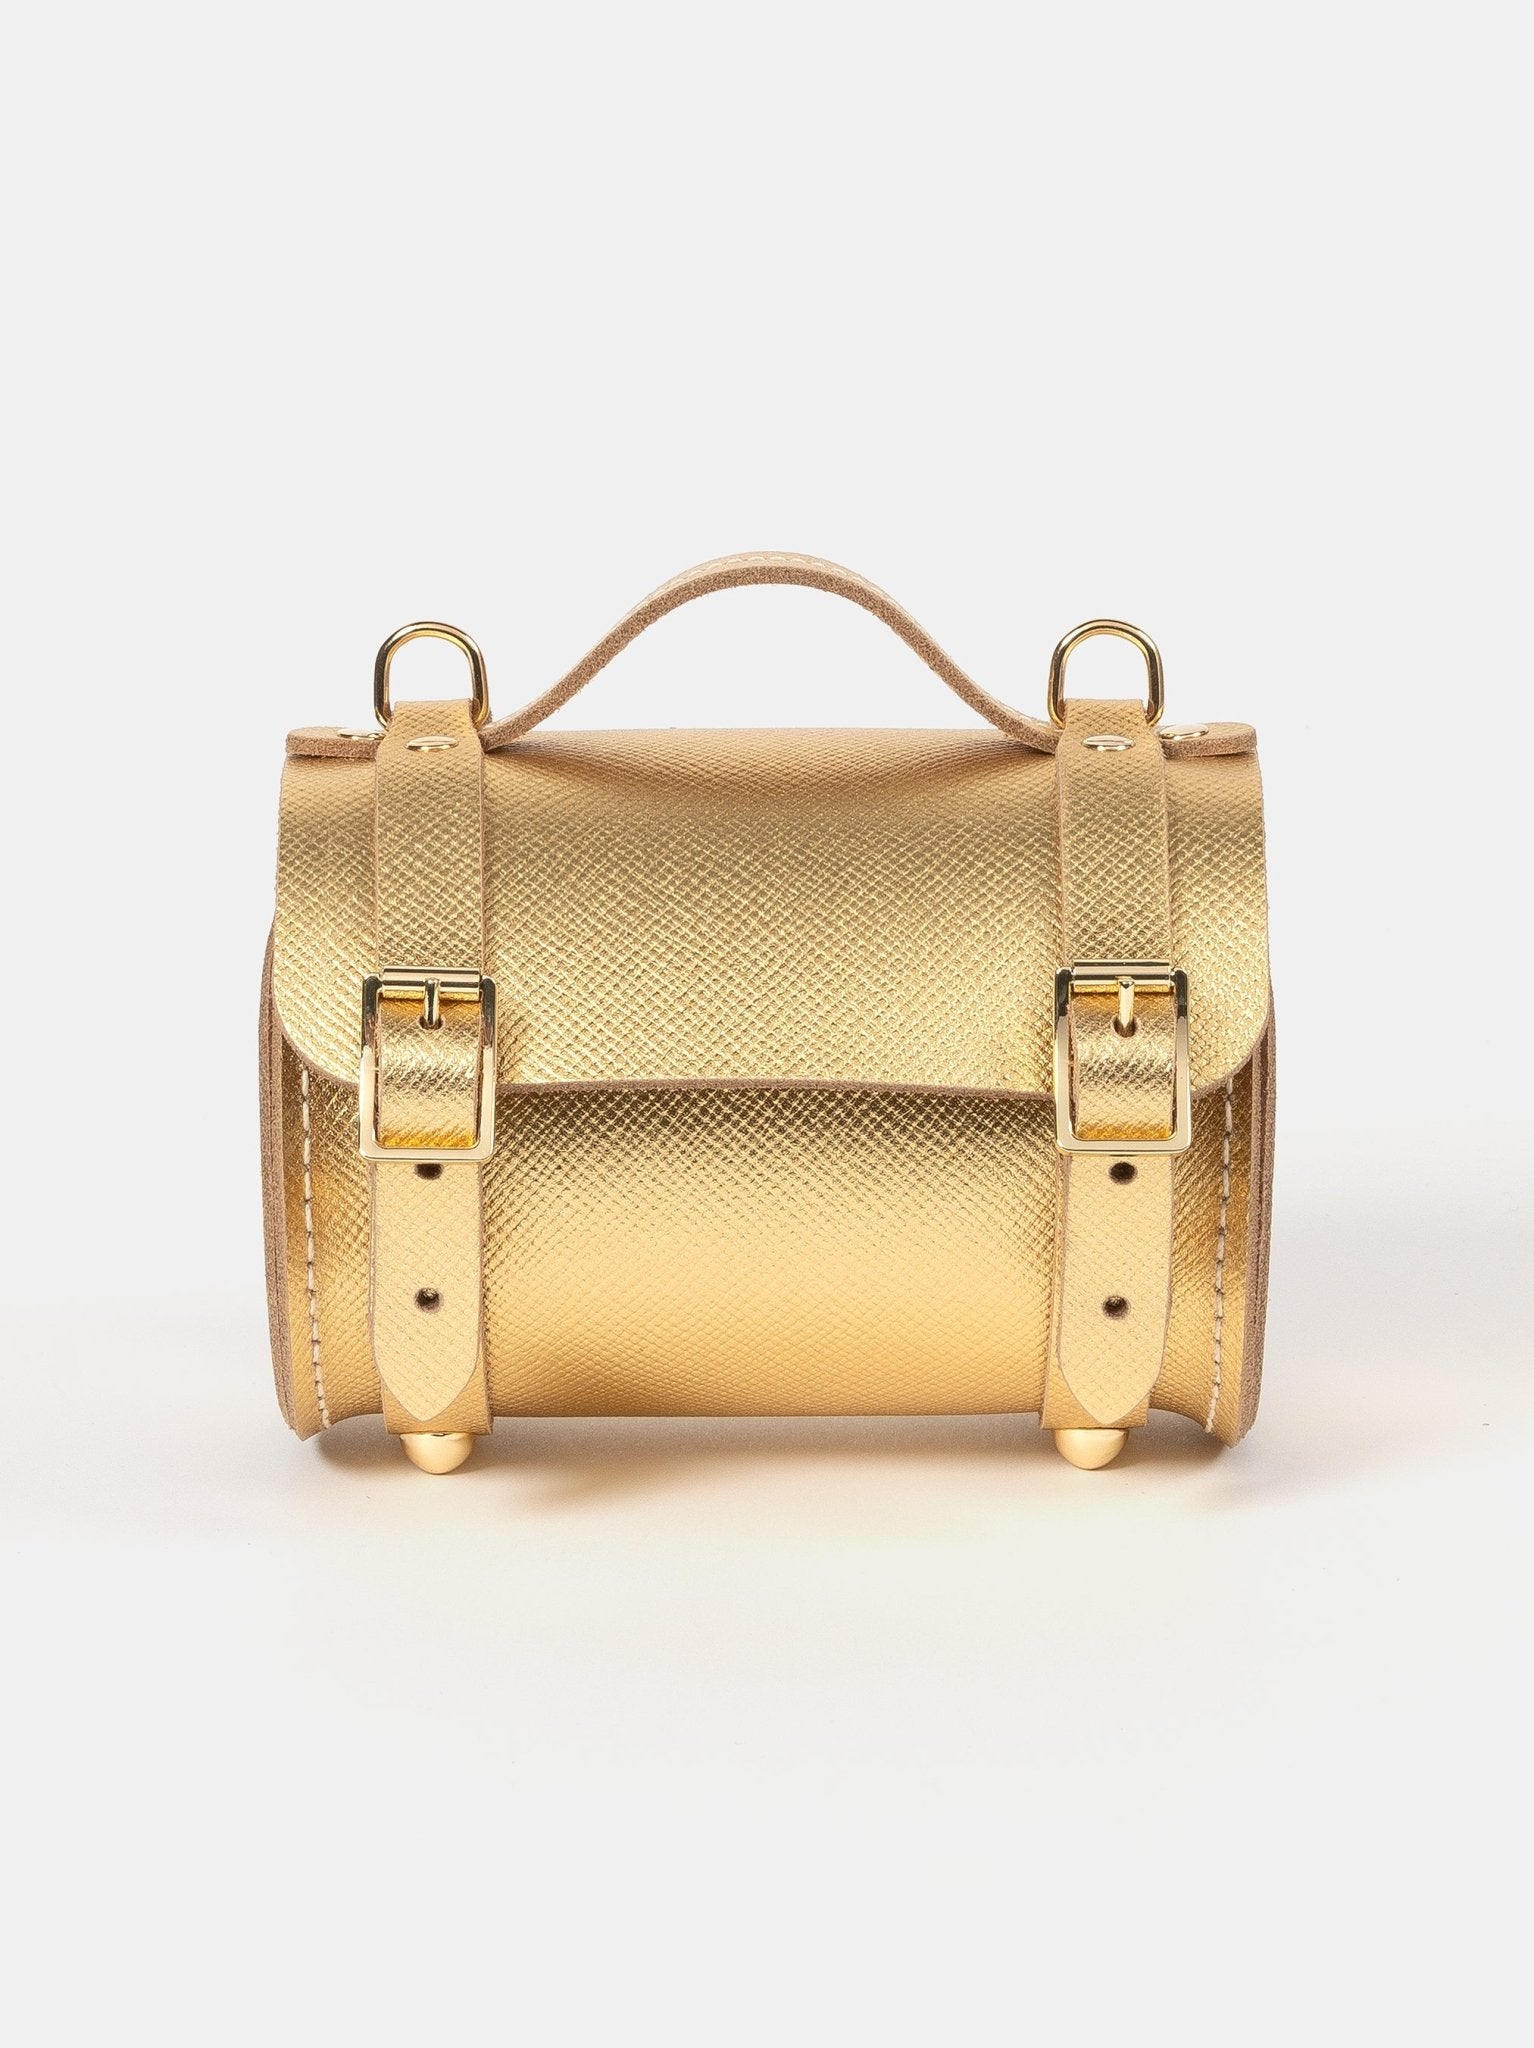 The Cambridge Satchel Co. Women's Brown Handbag product